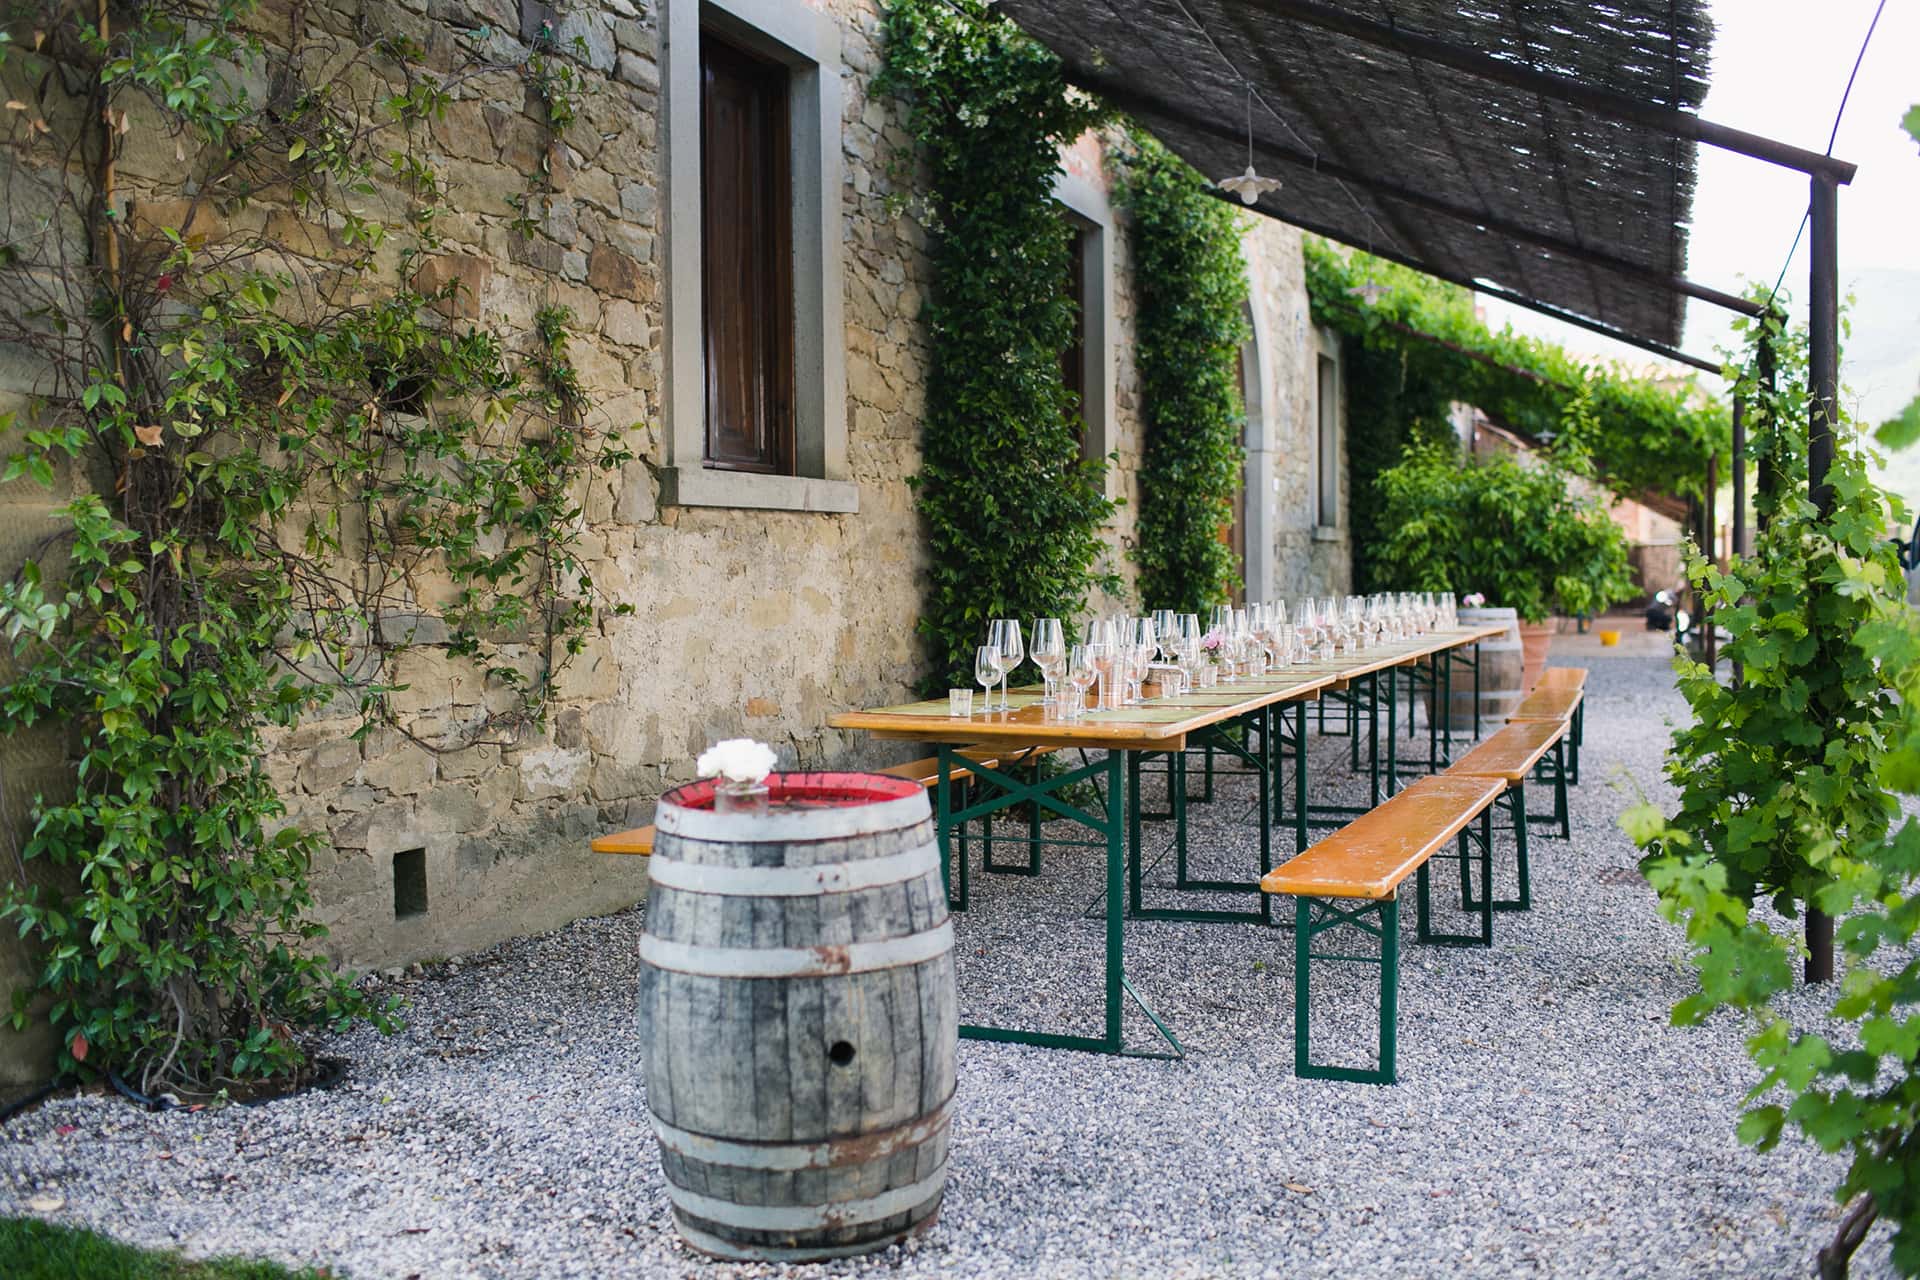 Degustazioni vini toscani in cantina a Castiglion Fiorentino, Arezzo